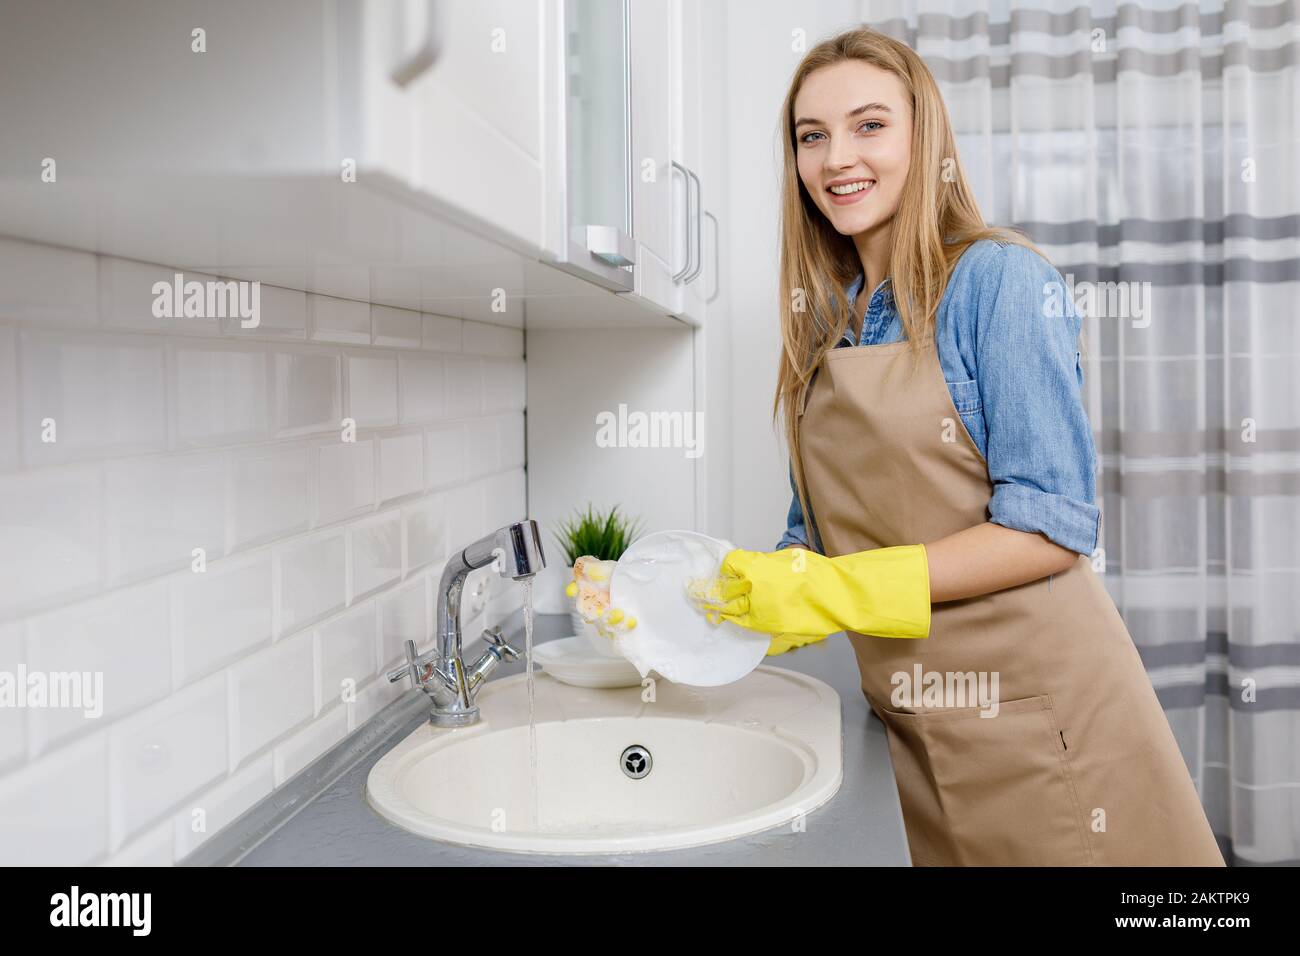 Jolie fille blonde dans un tablier et gants jaunes laver la vaisselle dans une cuisine légère Banque D'Images